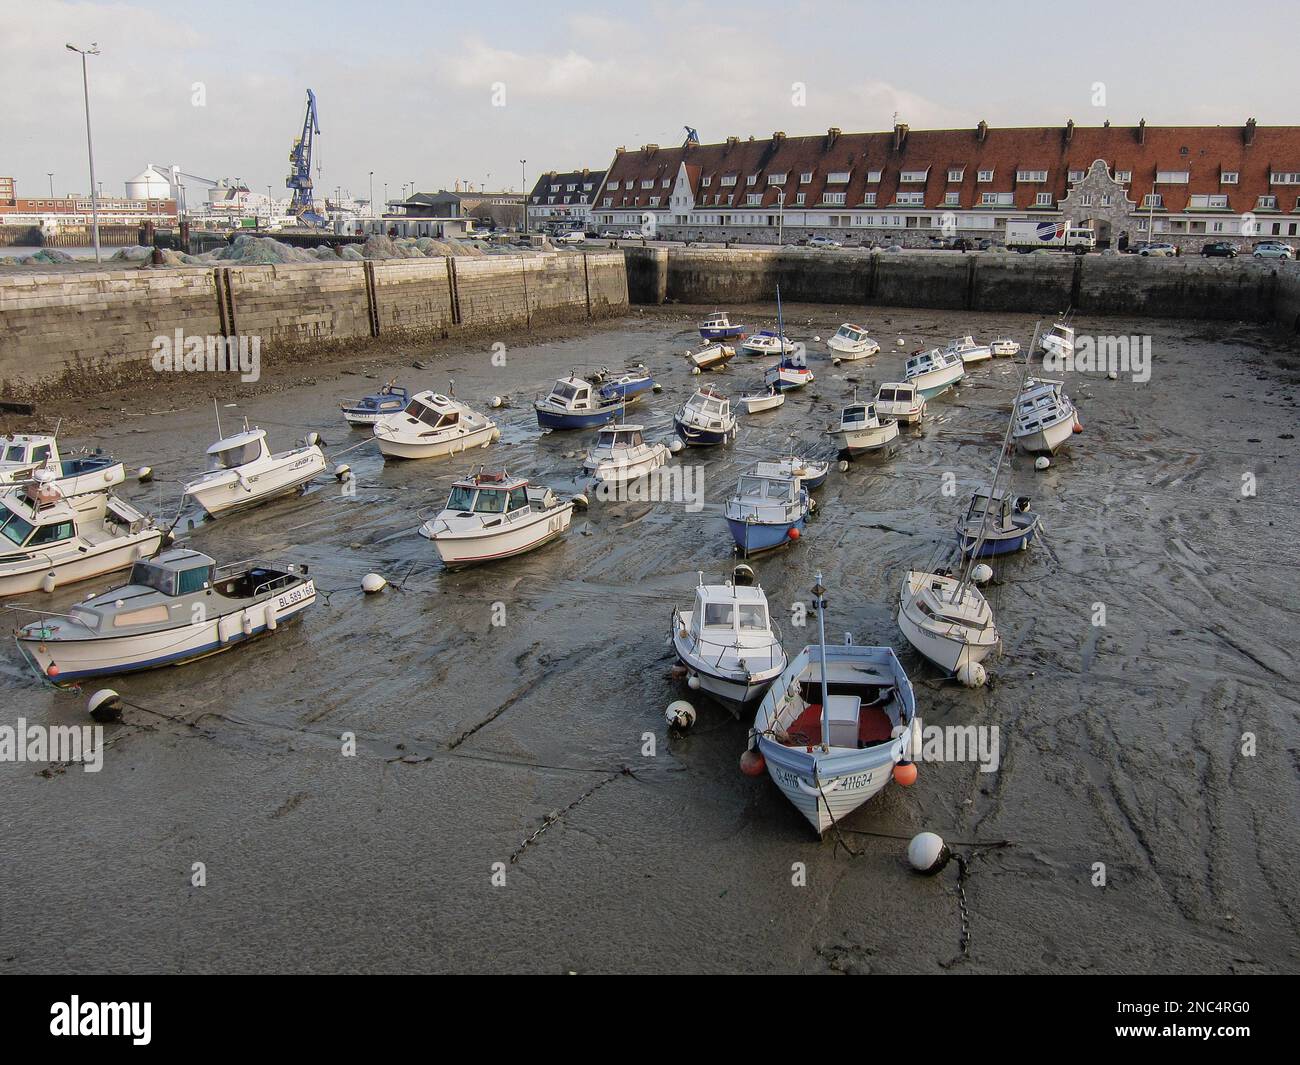 Molte barche in riva alla bassa marea a Calais, in Francia. Foto Stock